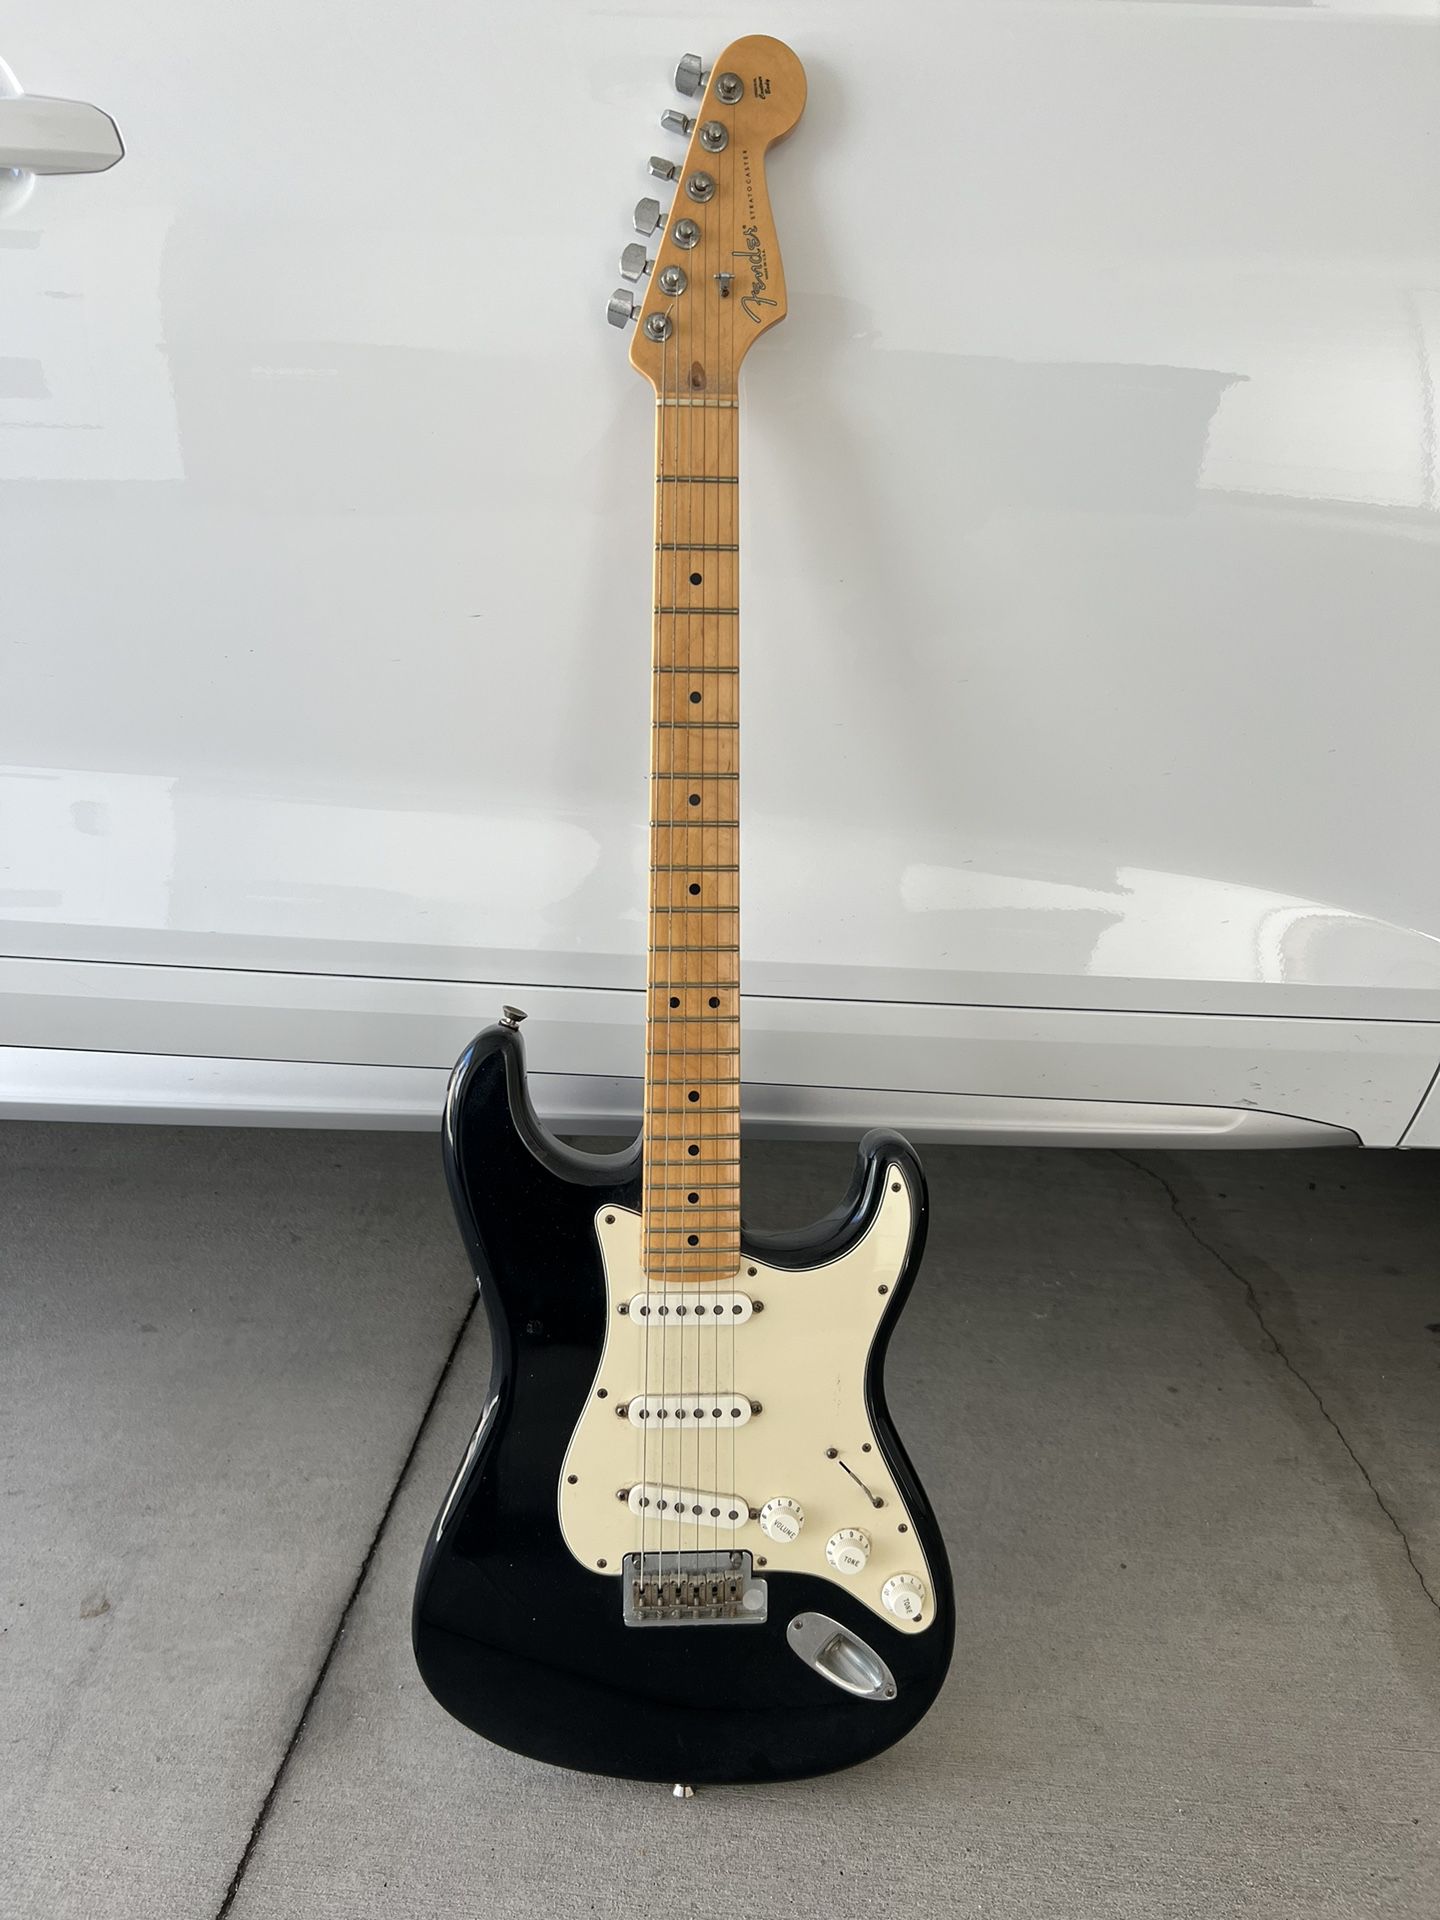 Fender Stratocaster Guitar 